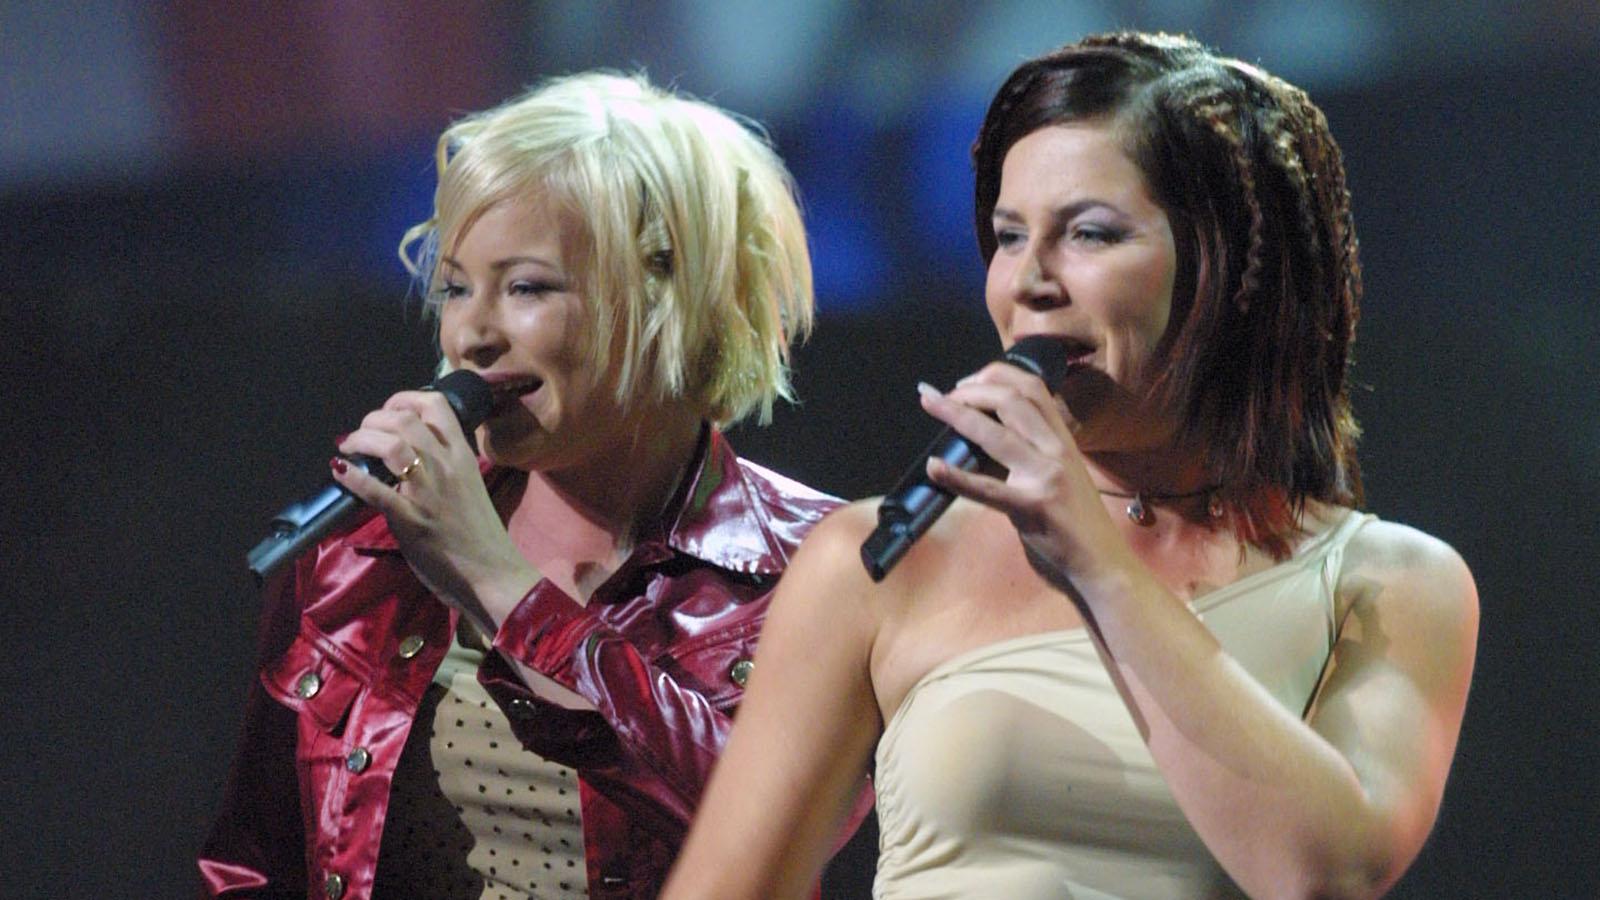 Dansbandet Friends med Nina Inhammar och Kim Kärnfalk som sångerskor,  kom femma i Eurovision song contest 2001 med låten ”Listen to your heartbeat”.